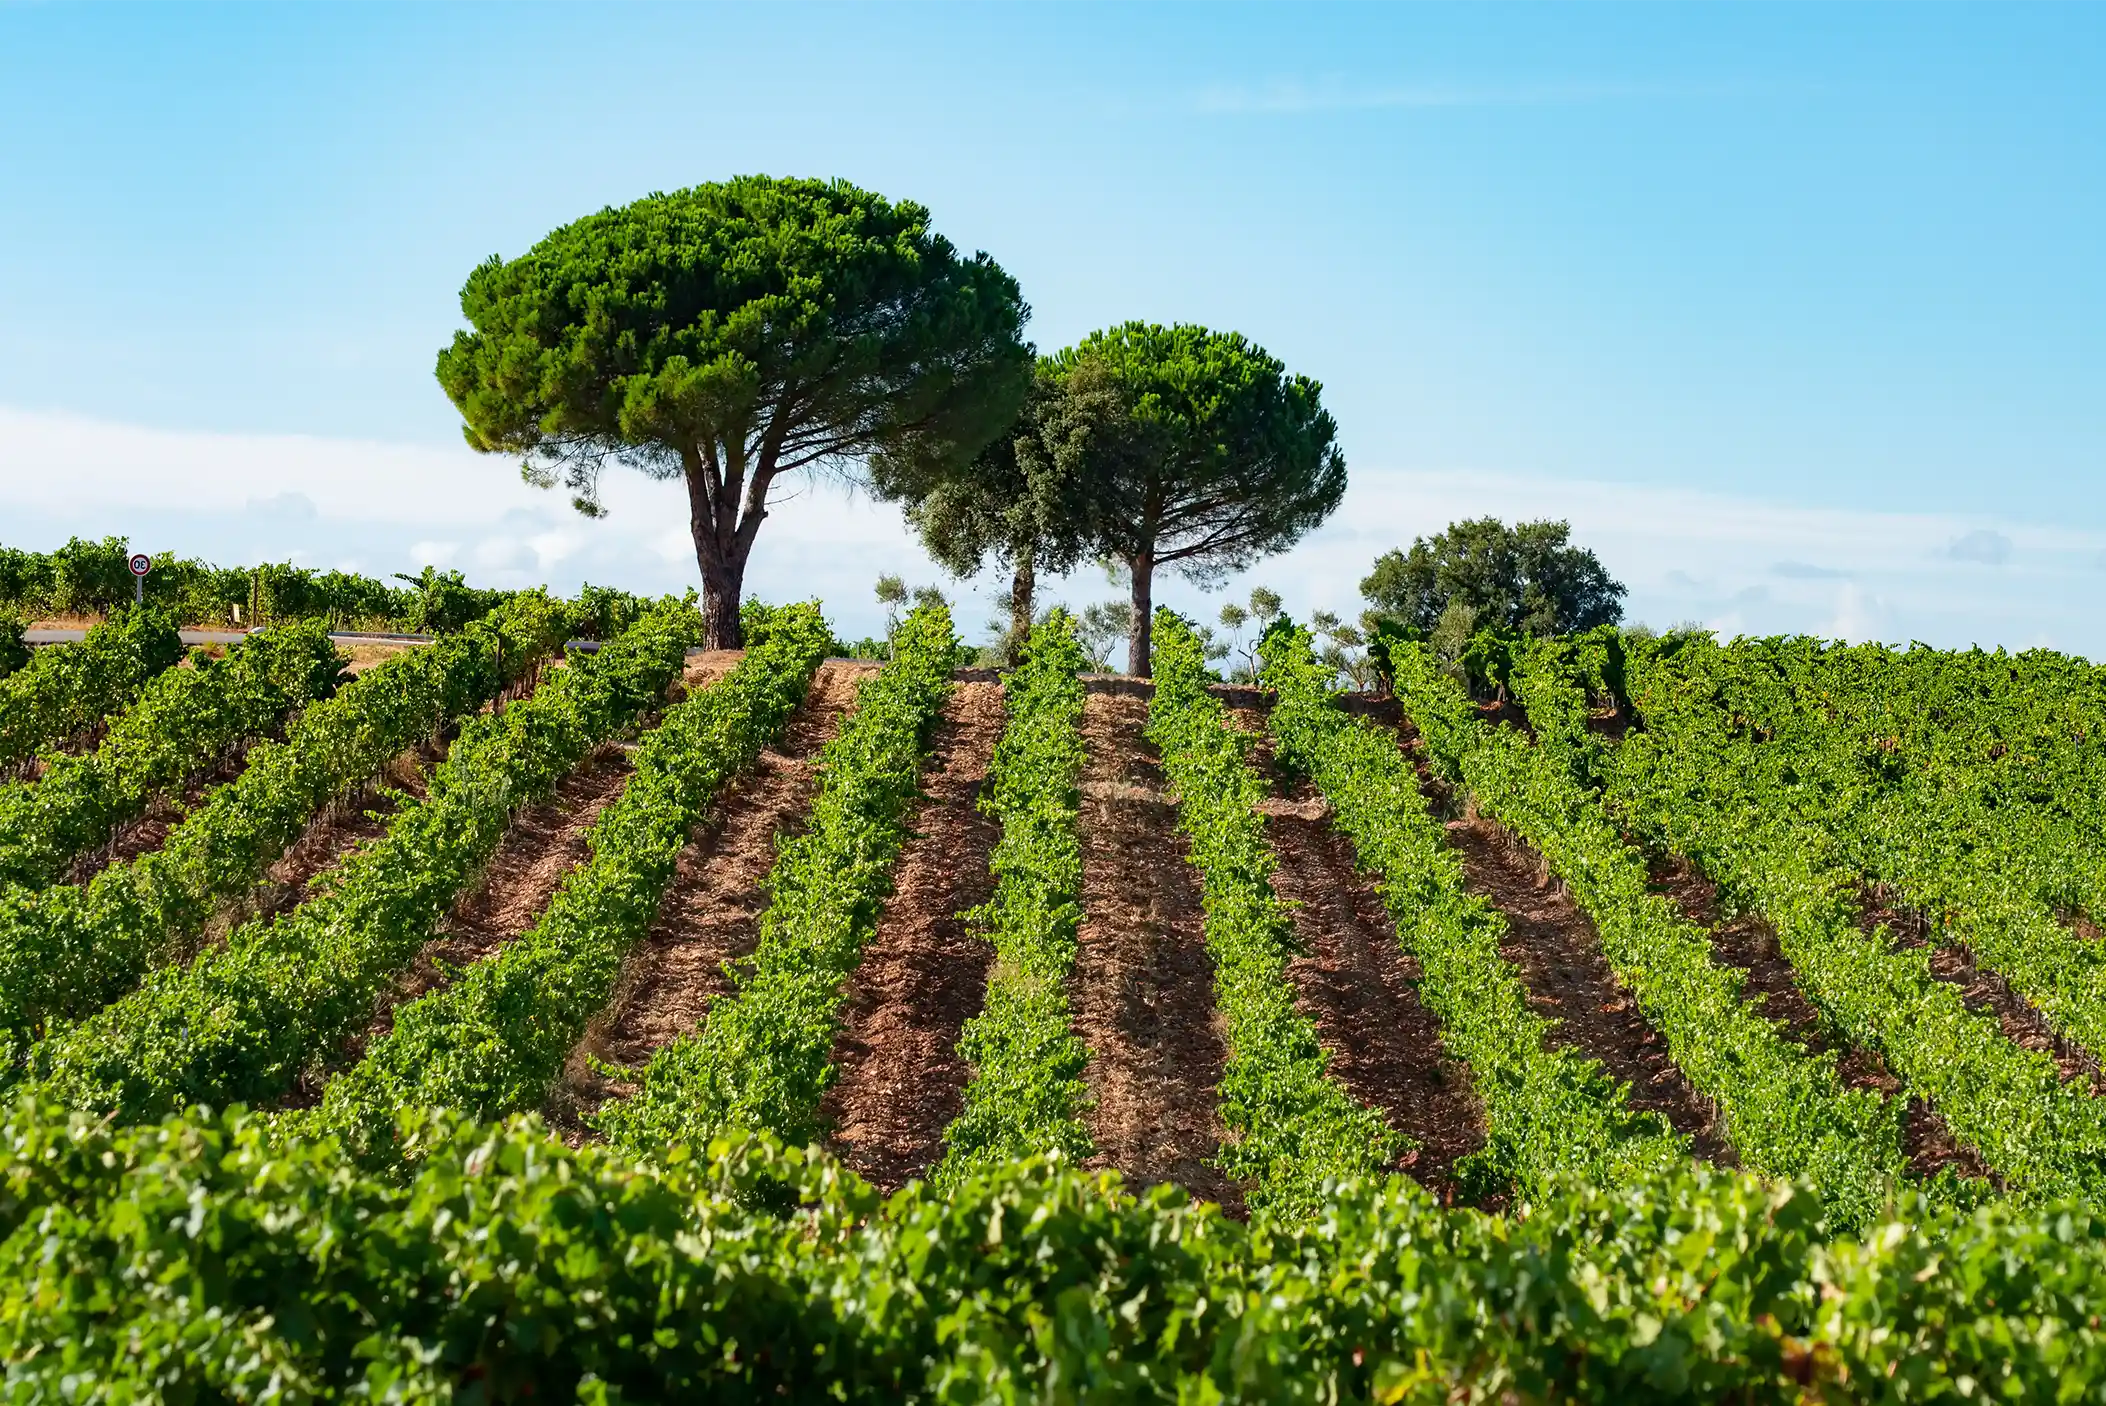 Vineyard in Bandol France. 
